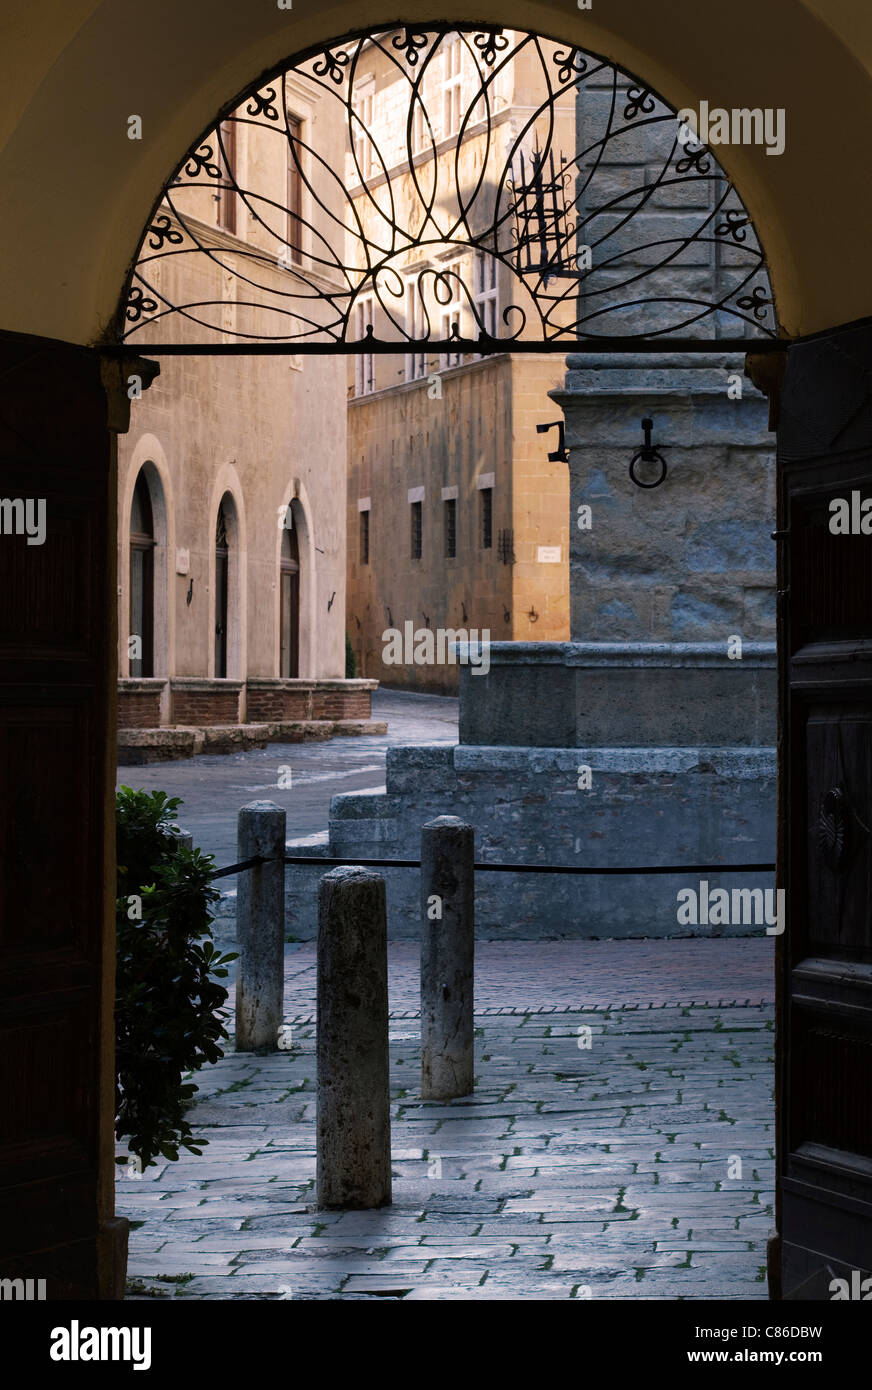 Street scene - Pienza, Tuscany - Early morning doorway. Stock Photo